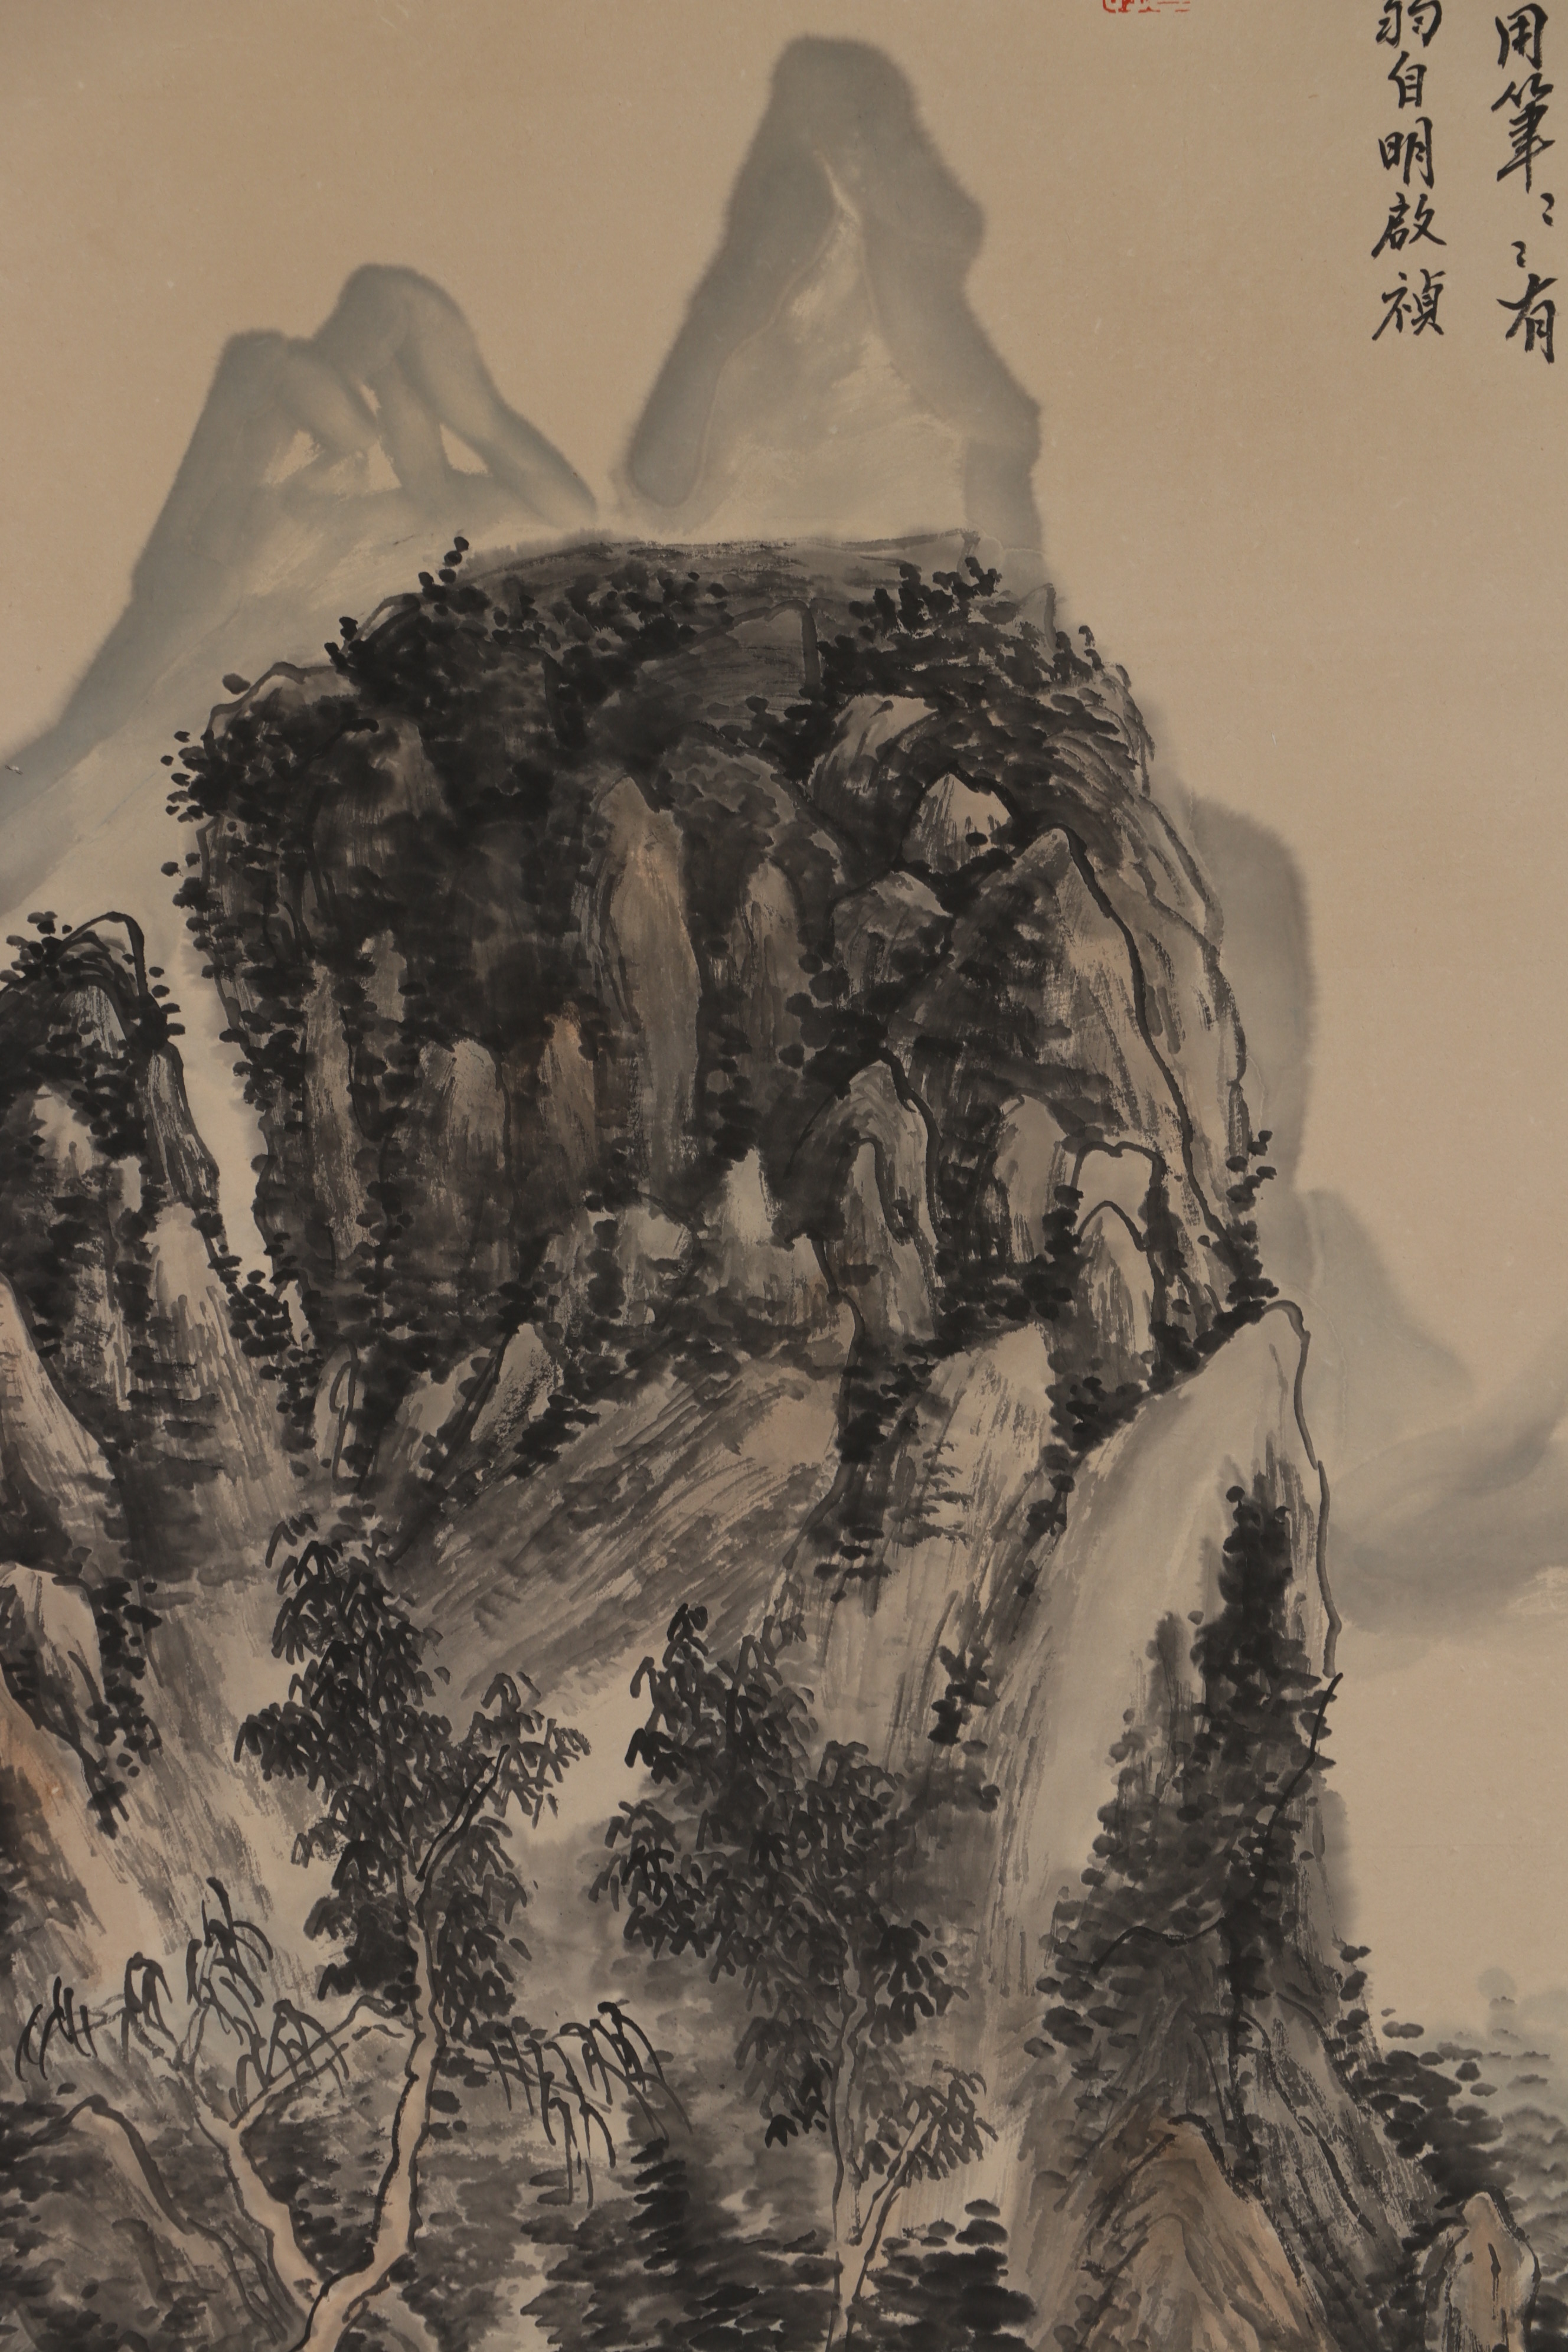 黄宾虹山水画早期图片